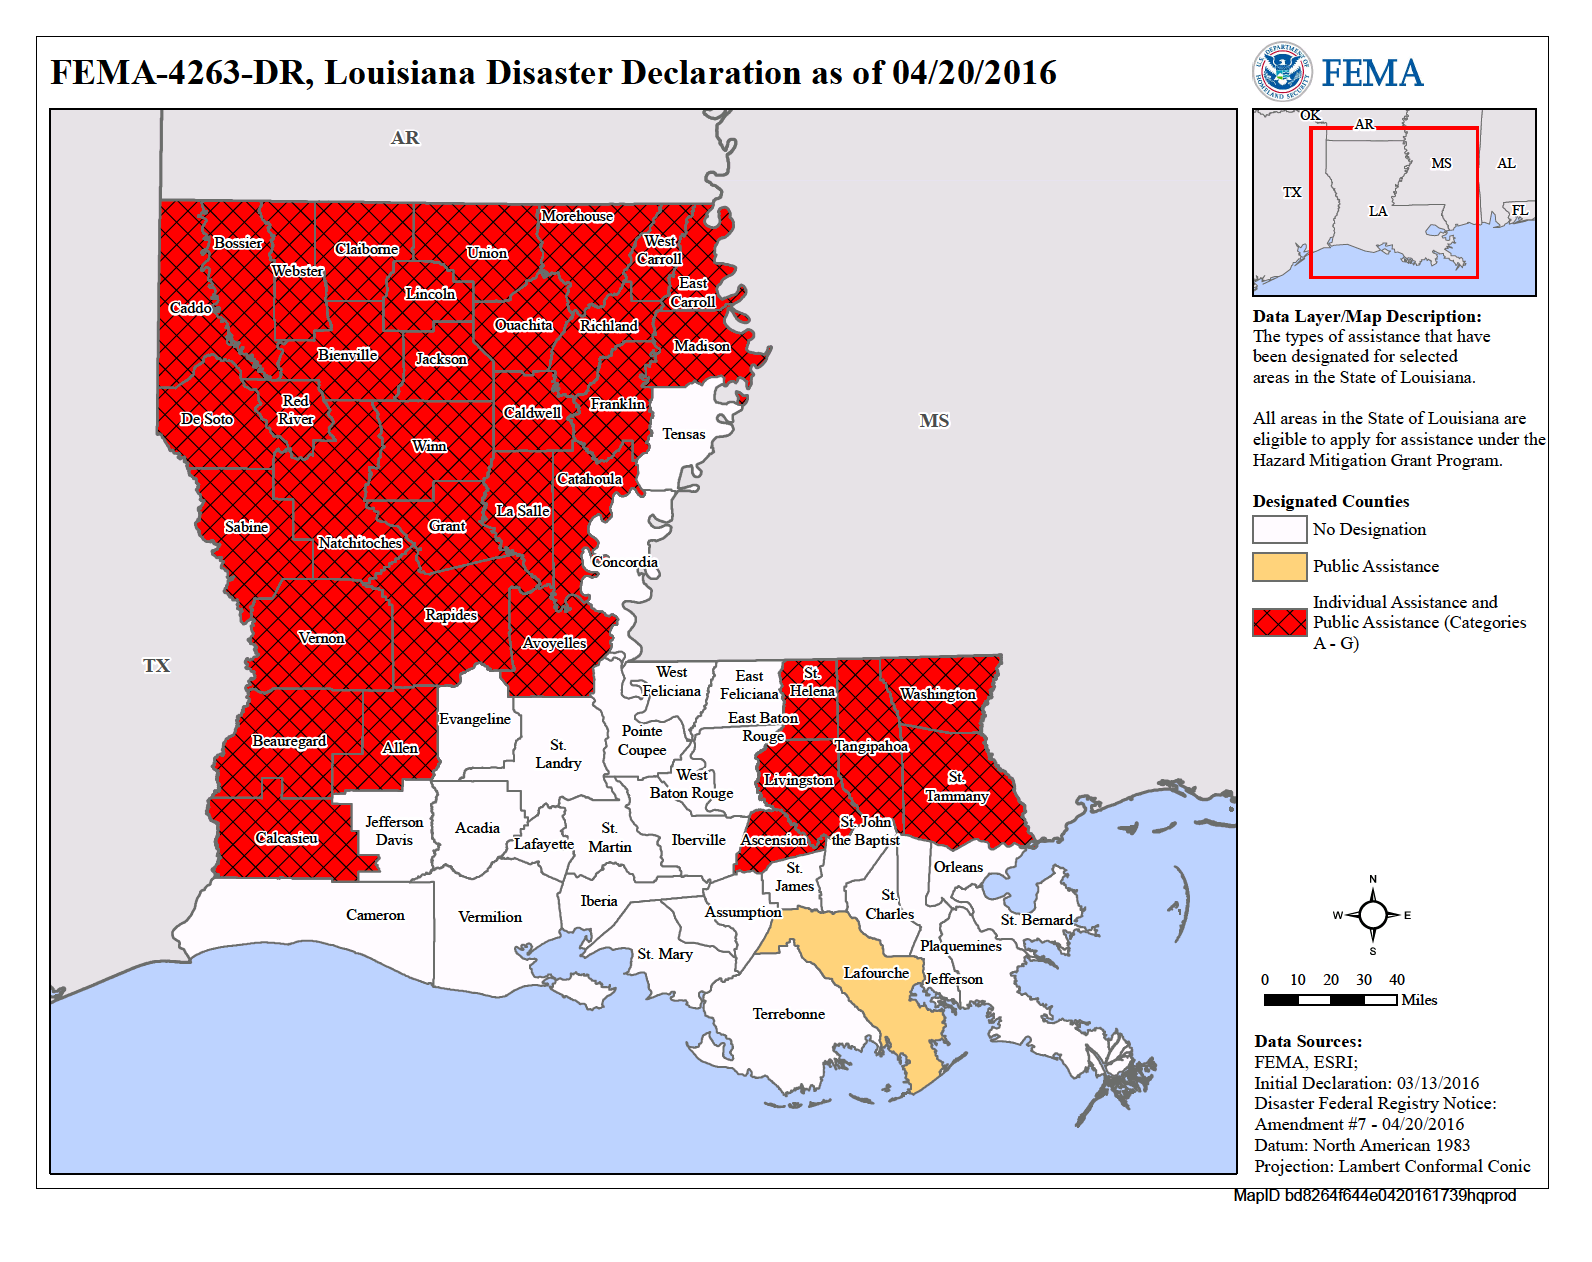 Louisiana Severe Storms And Flooding Dr 4263 Fema Gov